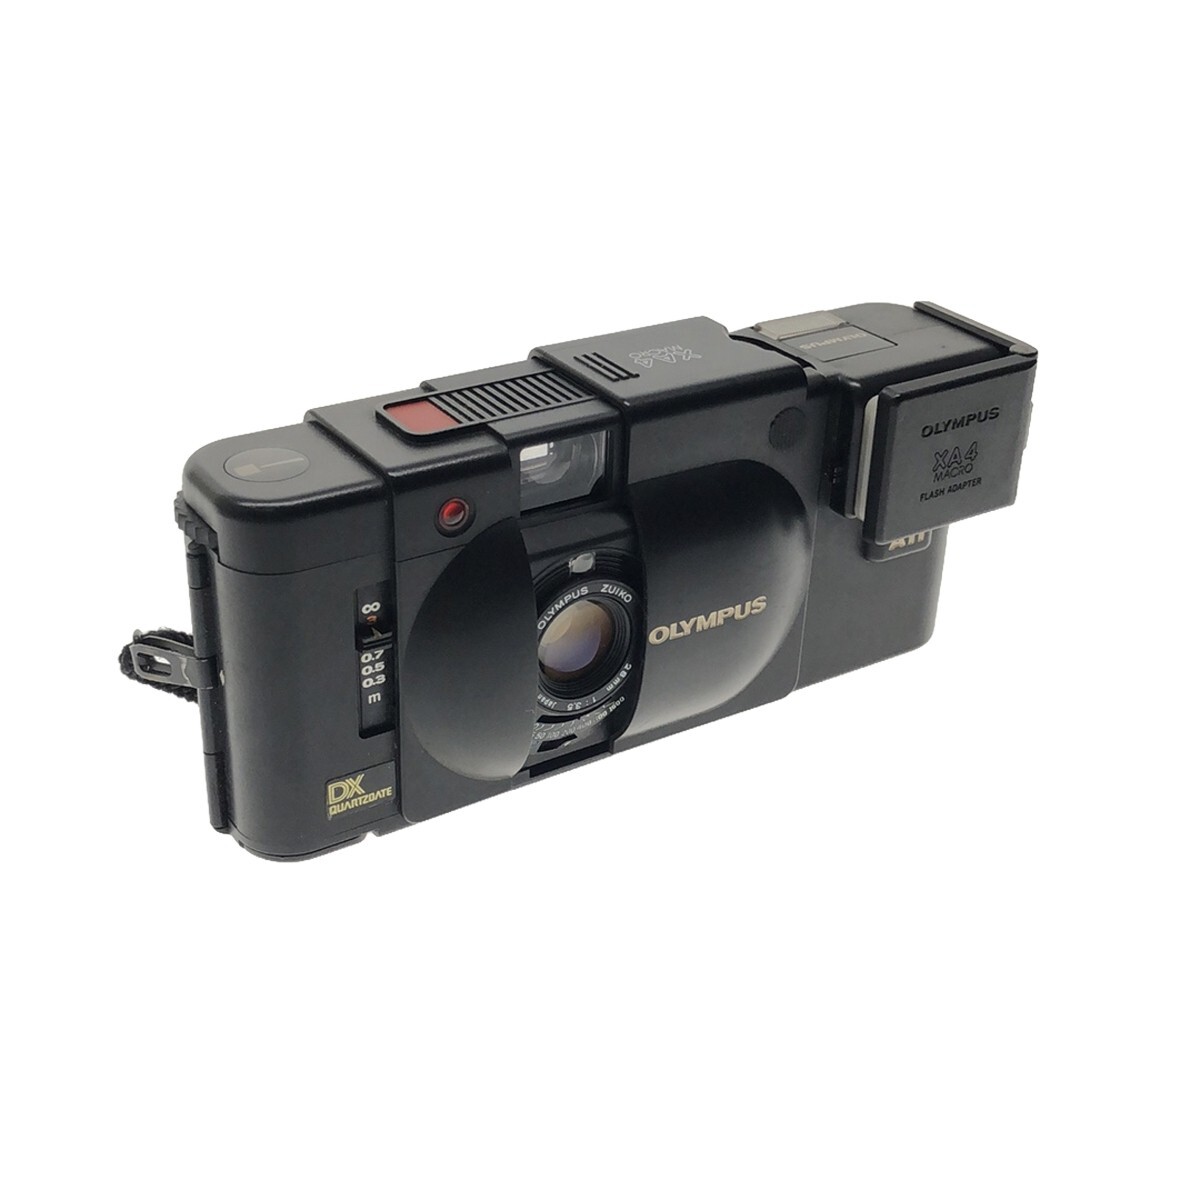 【ジャンク】OLYMPUS XA4 MACRO 28mm F3.5 Electronic Flash A11 ストロボ コンパクトフィルムカメラ 通電不可 オリンパス 現状品 C4010の画像2